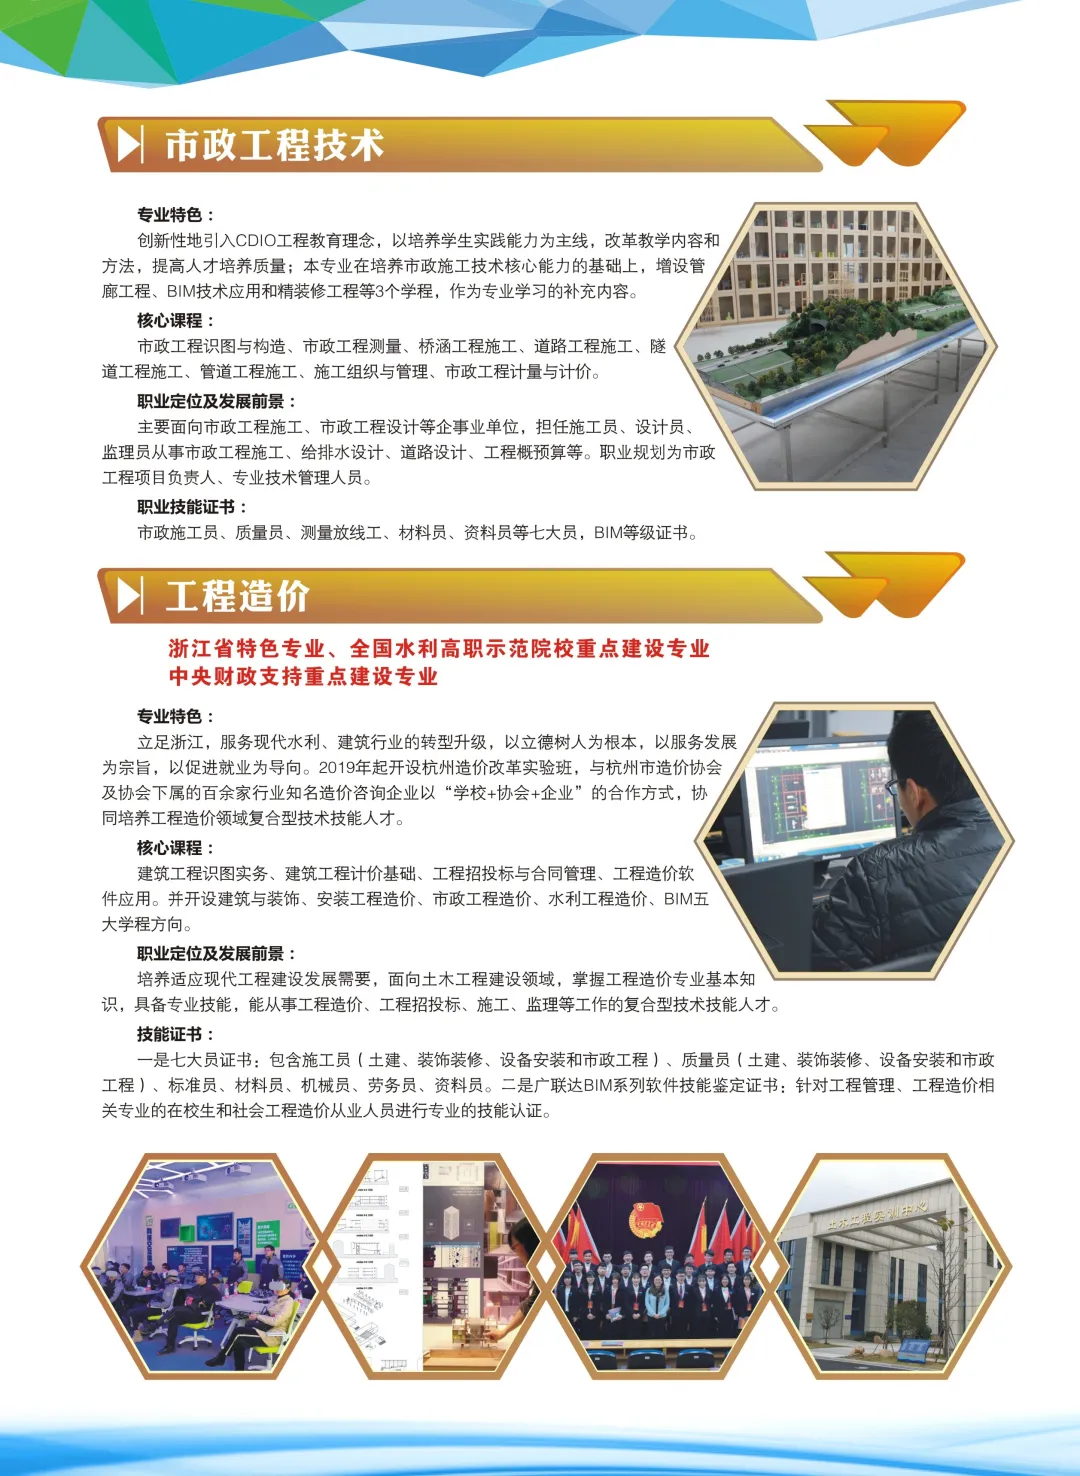  浙江同济科技职业学院2020年招生简章